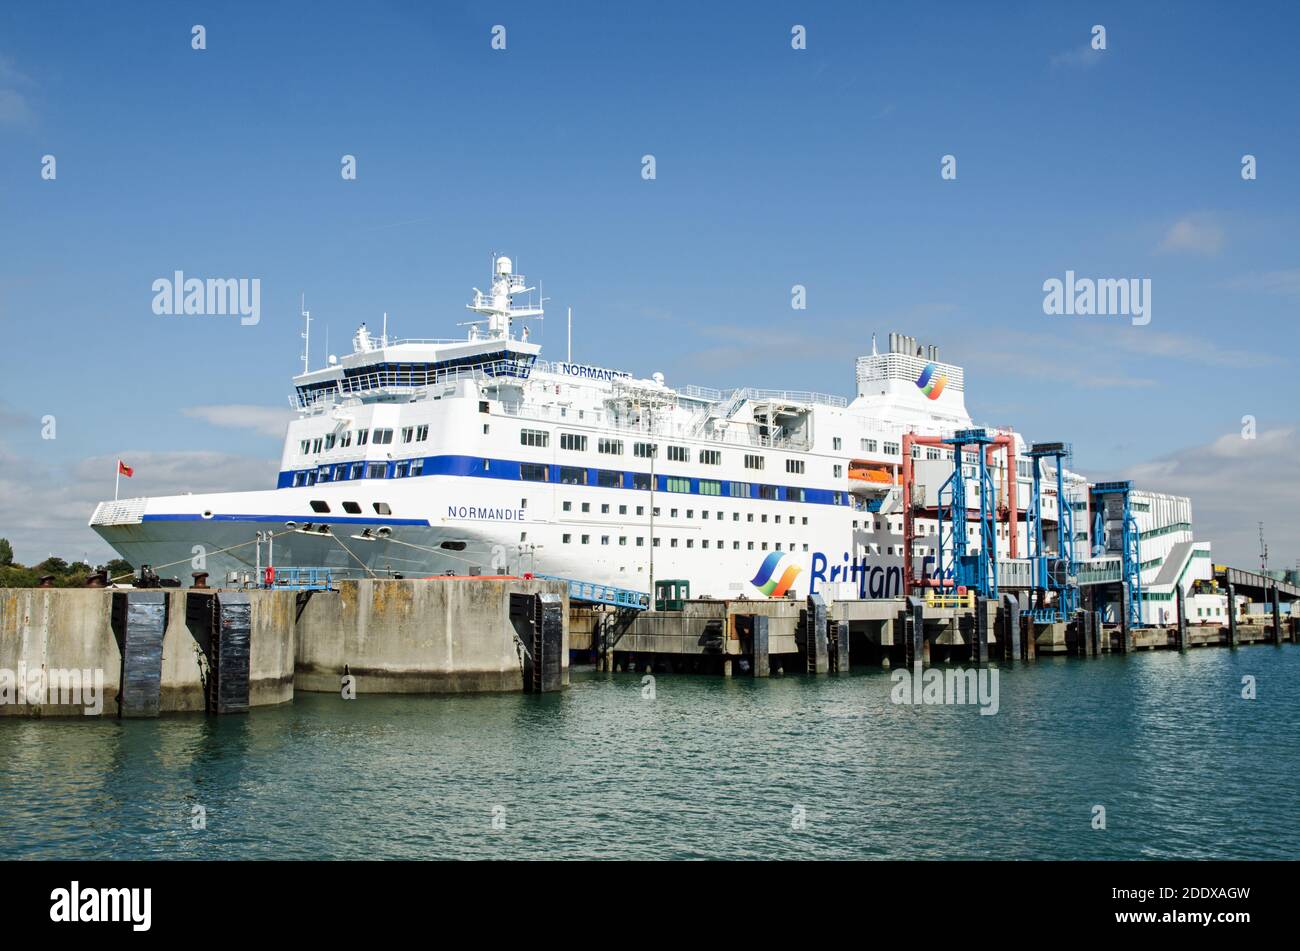 Portsmouth, Royaume-Uni - 8 septembre 2020 : vue latérale du grand traversier Normandie géré par Brittany Ferries amarré dans le port de Portsmouth sur un s ensoleillé Banque D'Images